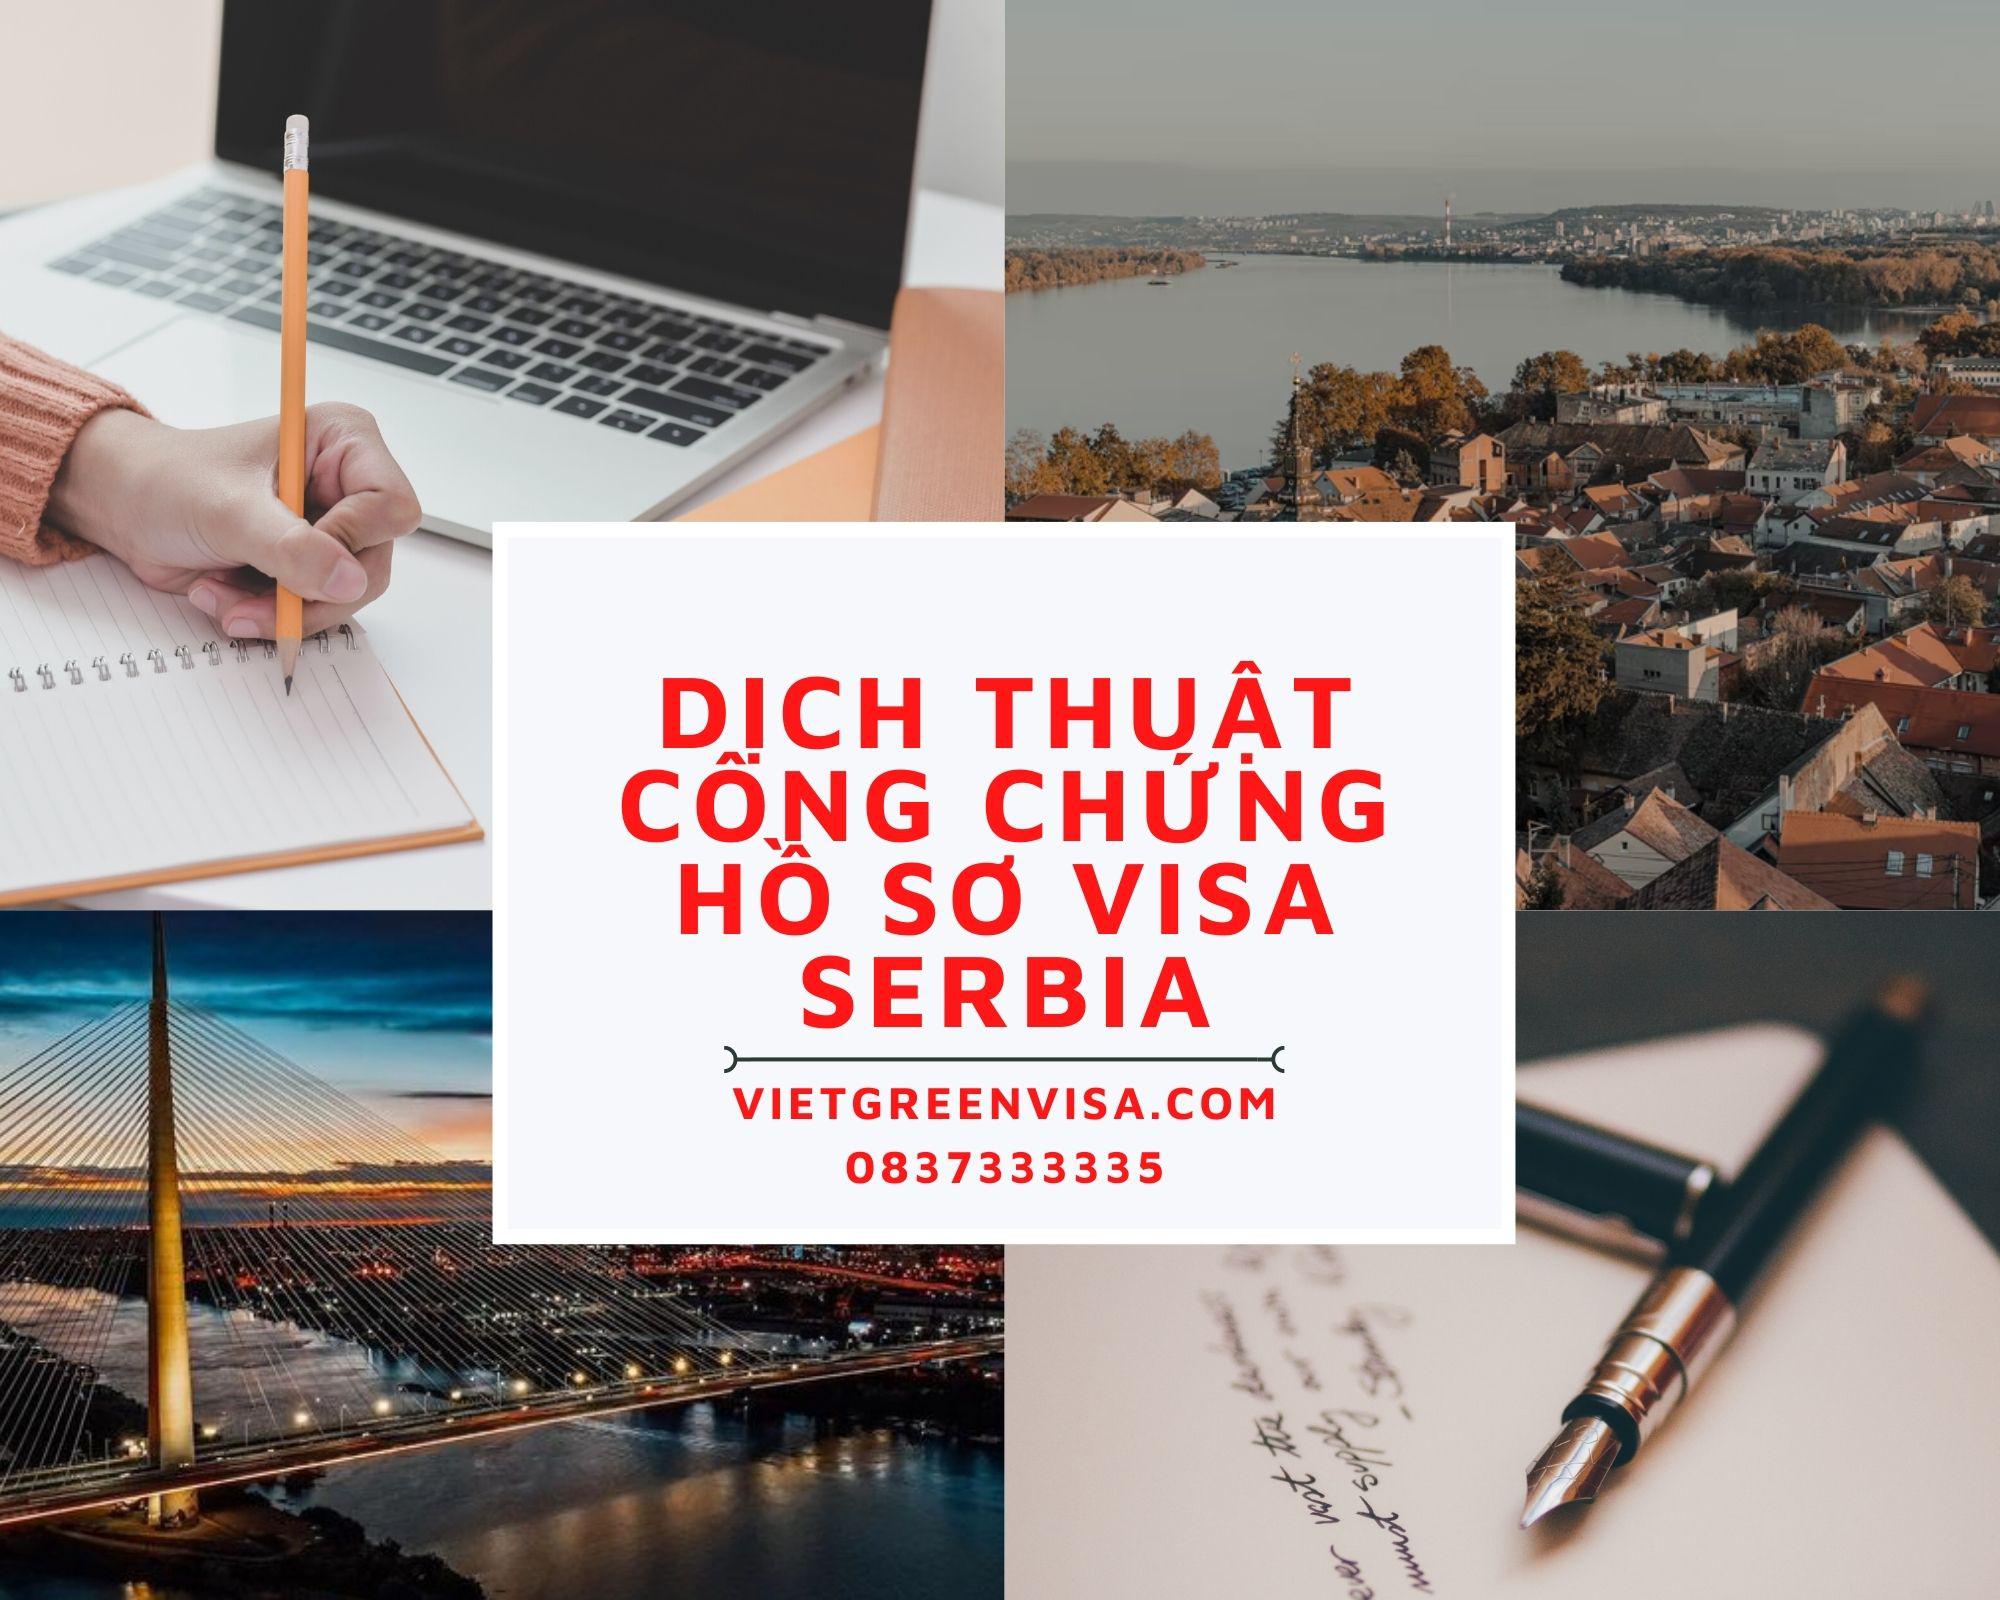 Dịch thuật công chứng hồ sơ visa du lịch, du học Serbia trọn gói